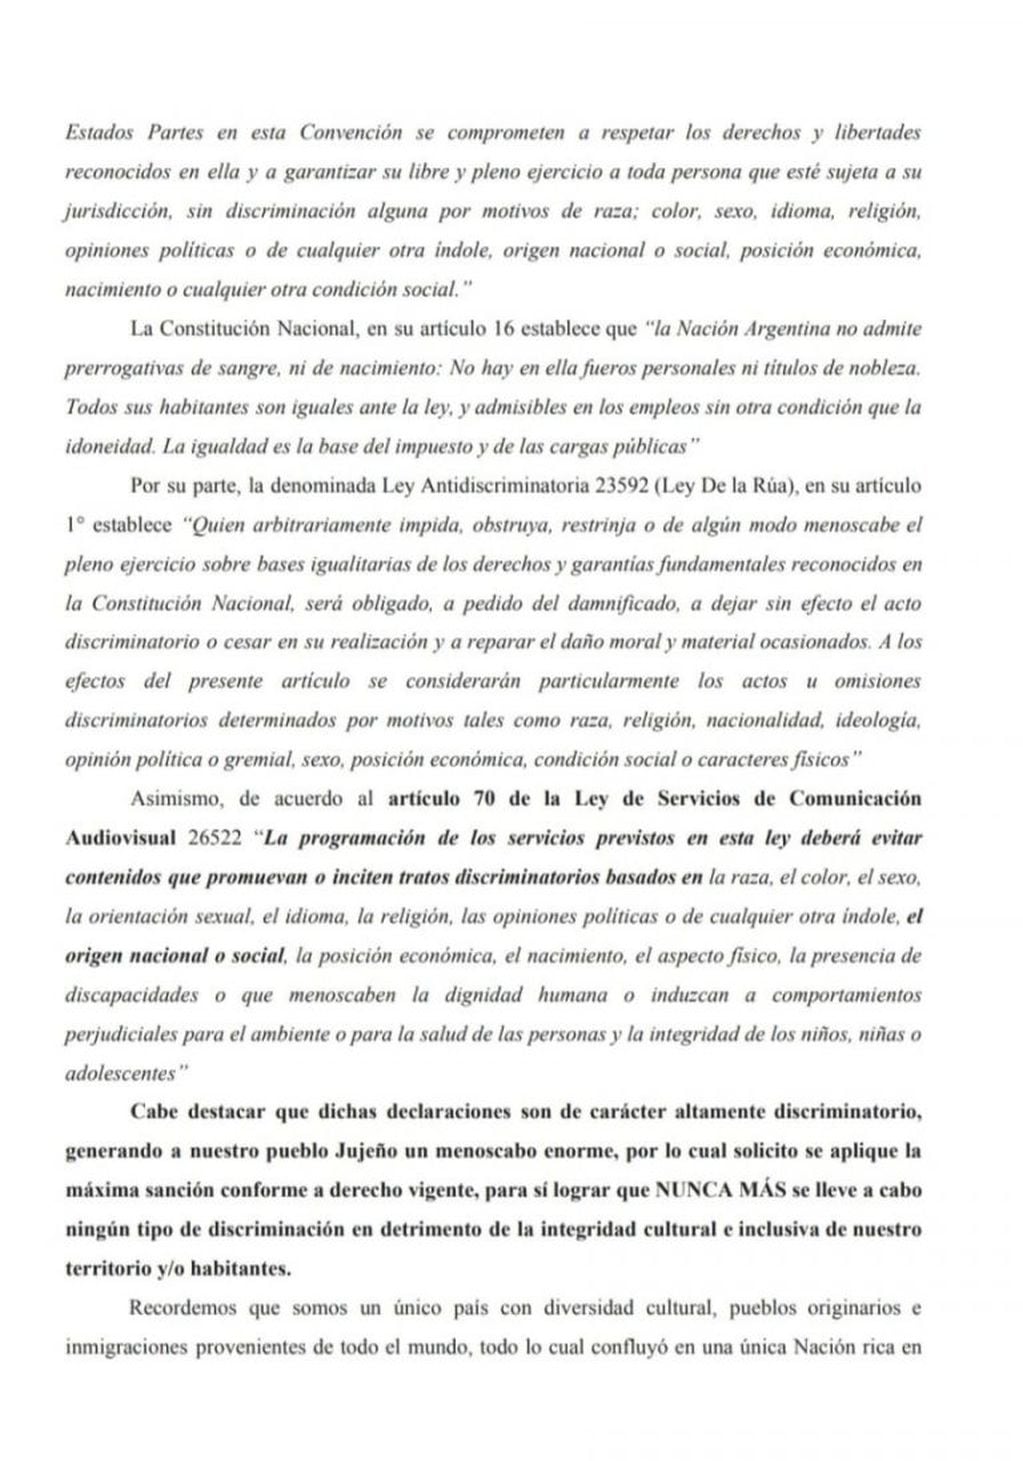 Segunda página de la presentación formulada por Giubergia.